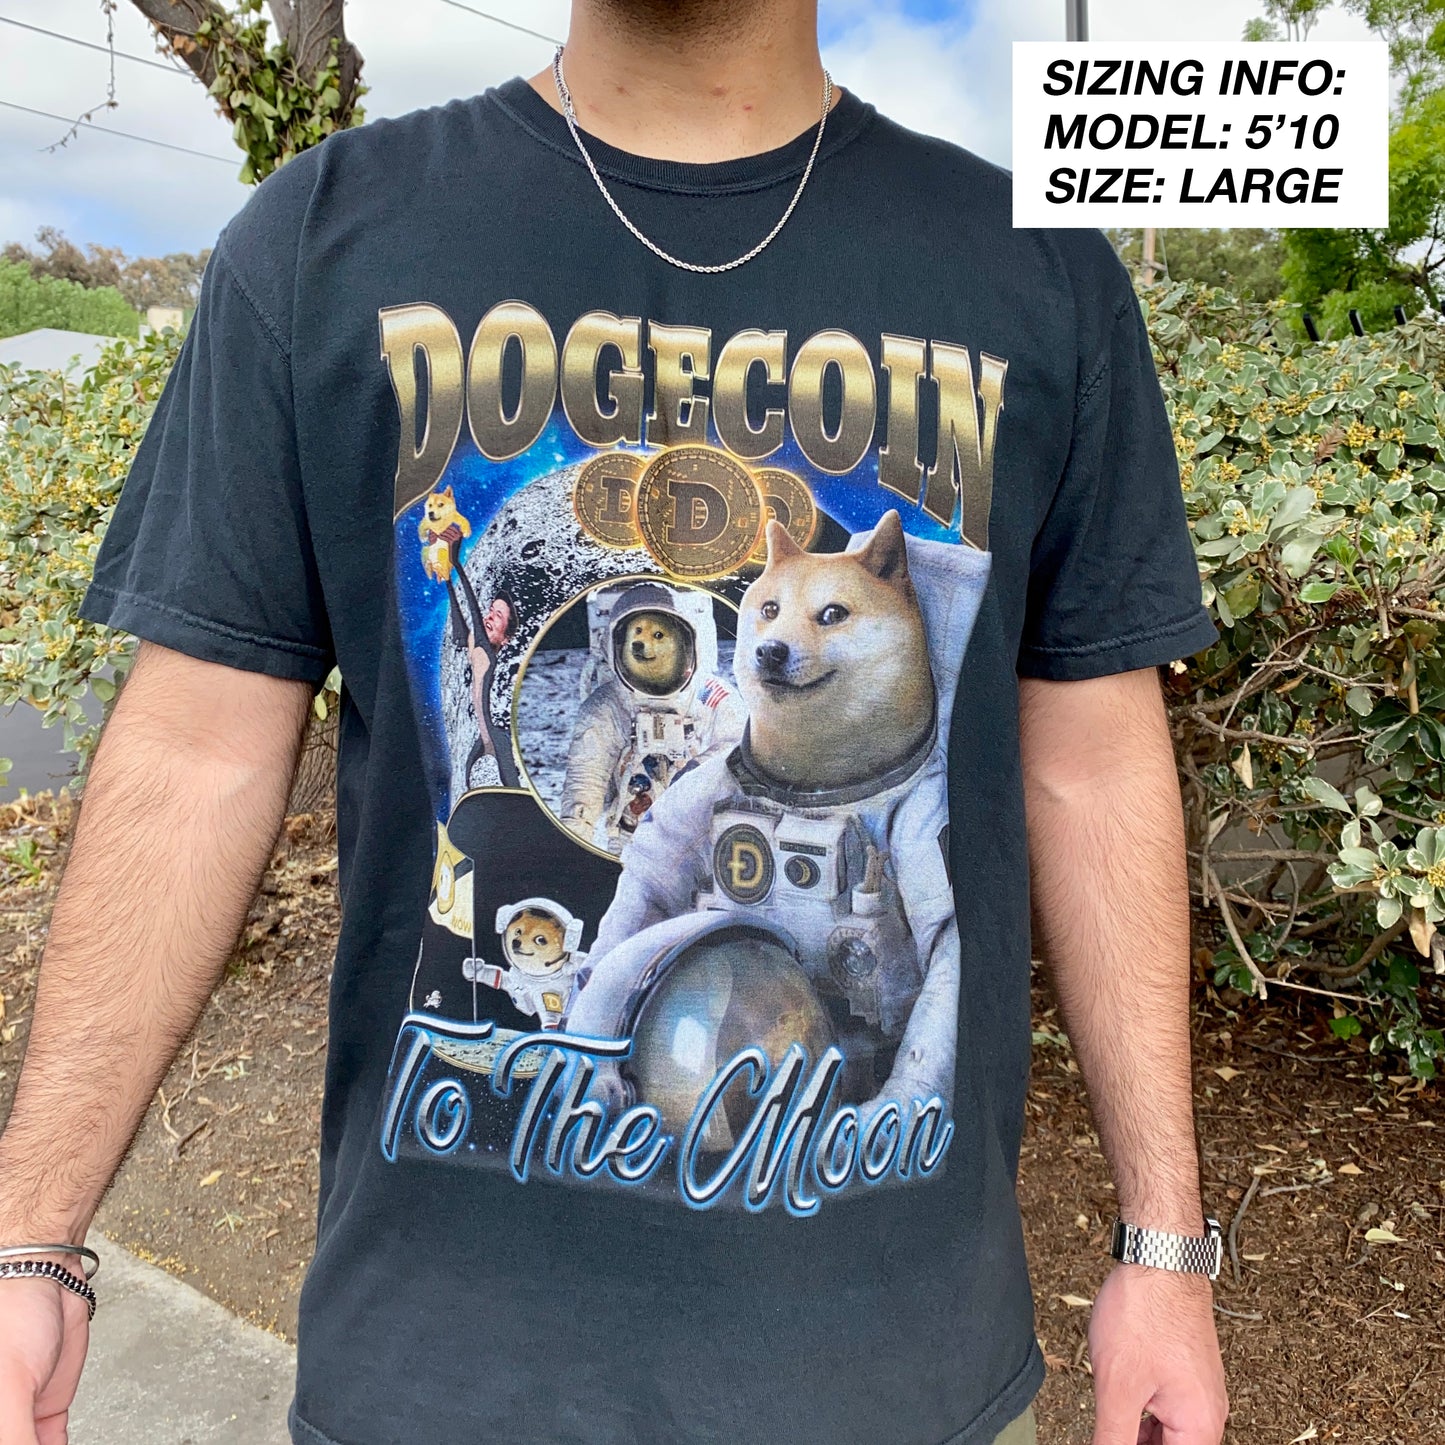 DOGECOIN VINTAGE T-Shirt